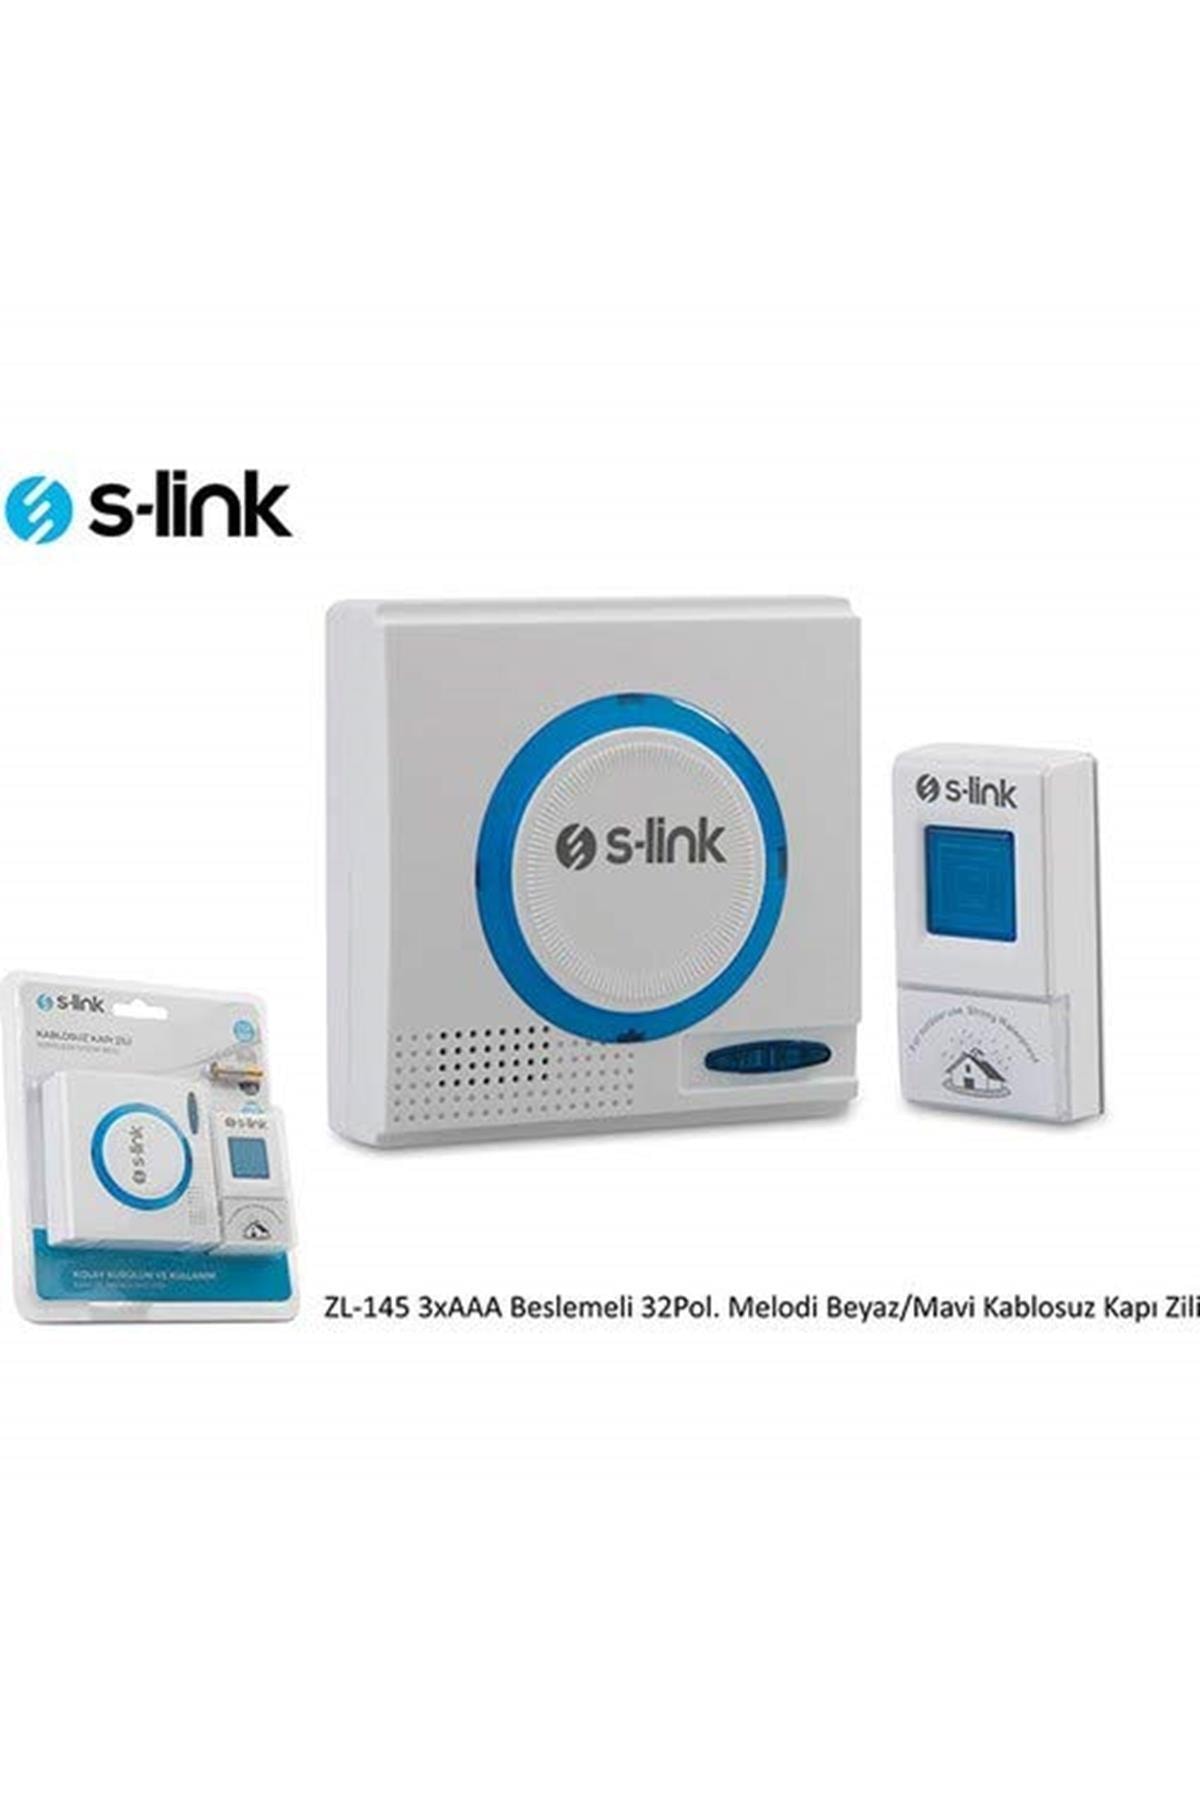 S-Link Zl-145 3xaa Beslemeli 32pol. Melodi Beyaz/mavi Kablosuz Kapı Zili  Fiyatı, Yorumları - TRENDYOL